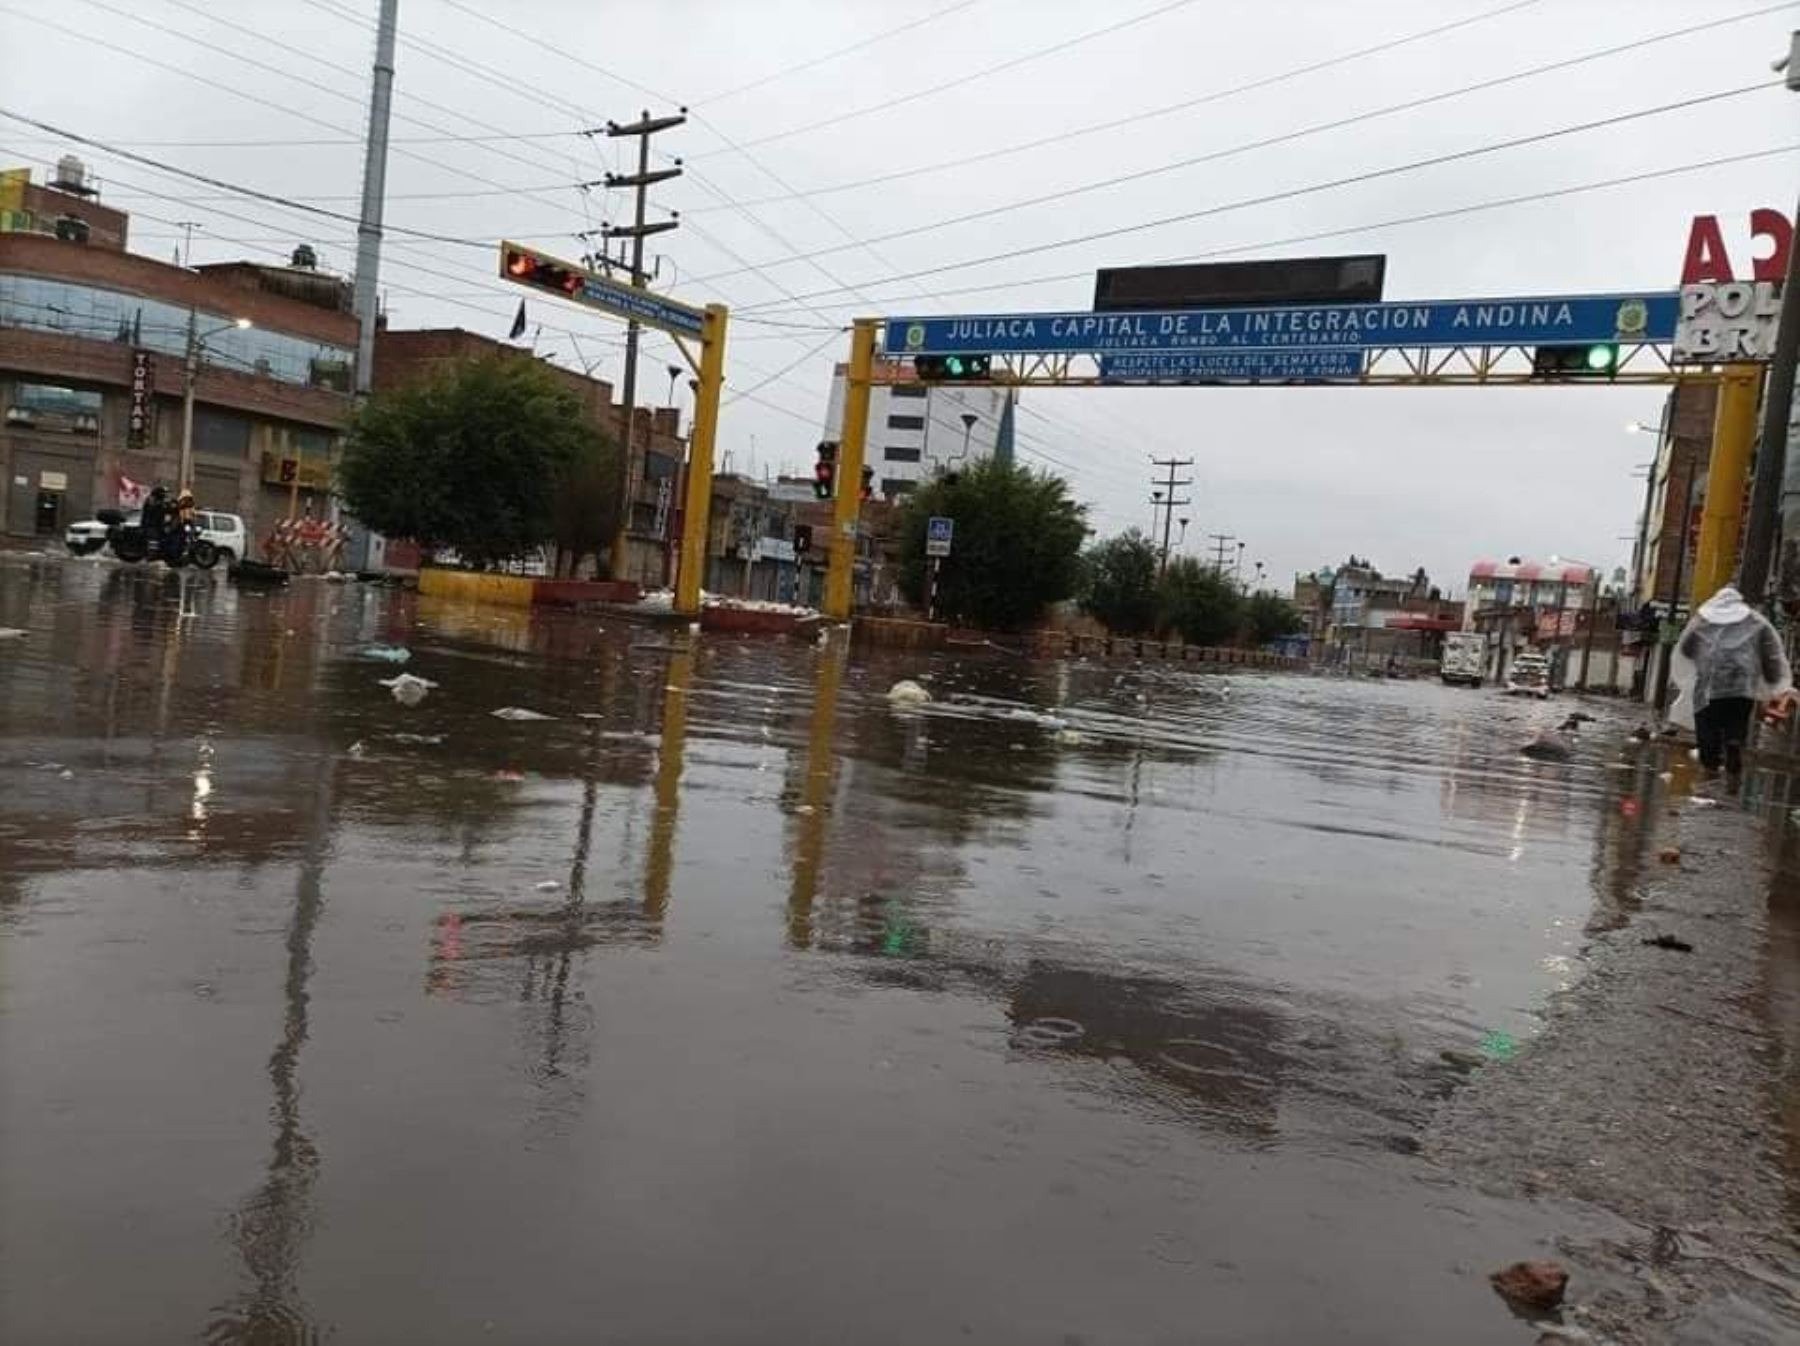 Las lluvias intensas que se registraron en Juliaca inundaron las calles de esa ciudad y afectaron a varias viviendas y locales. Foto: Juan Humberto Ccopa.